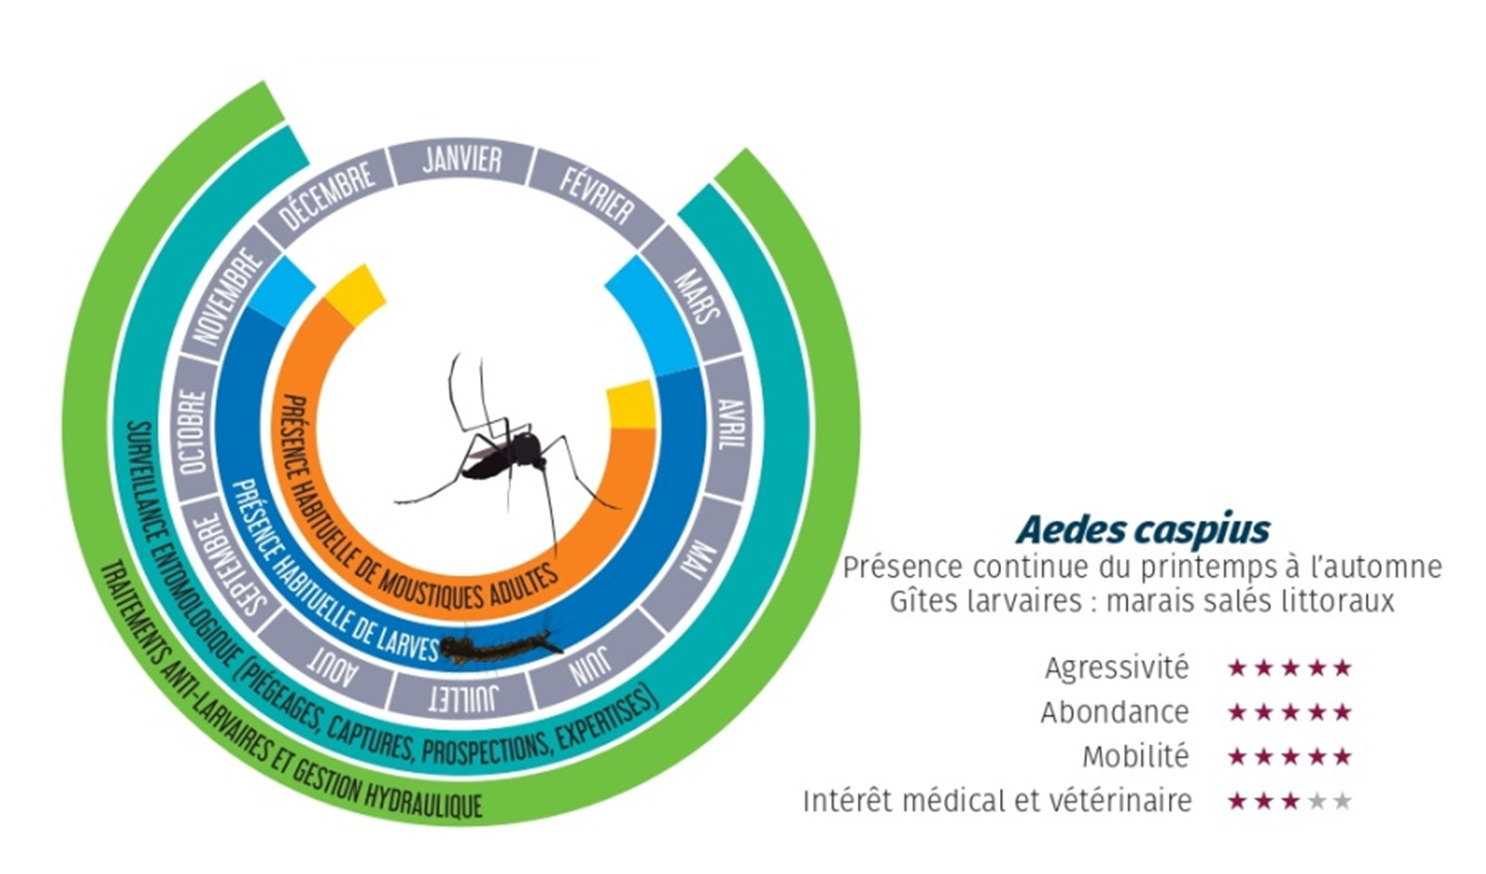 Dynamique d'Aedes caspius